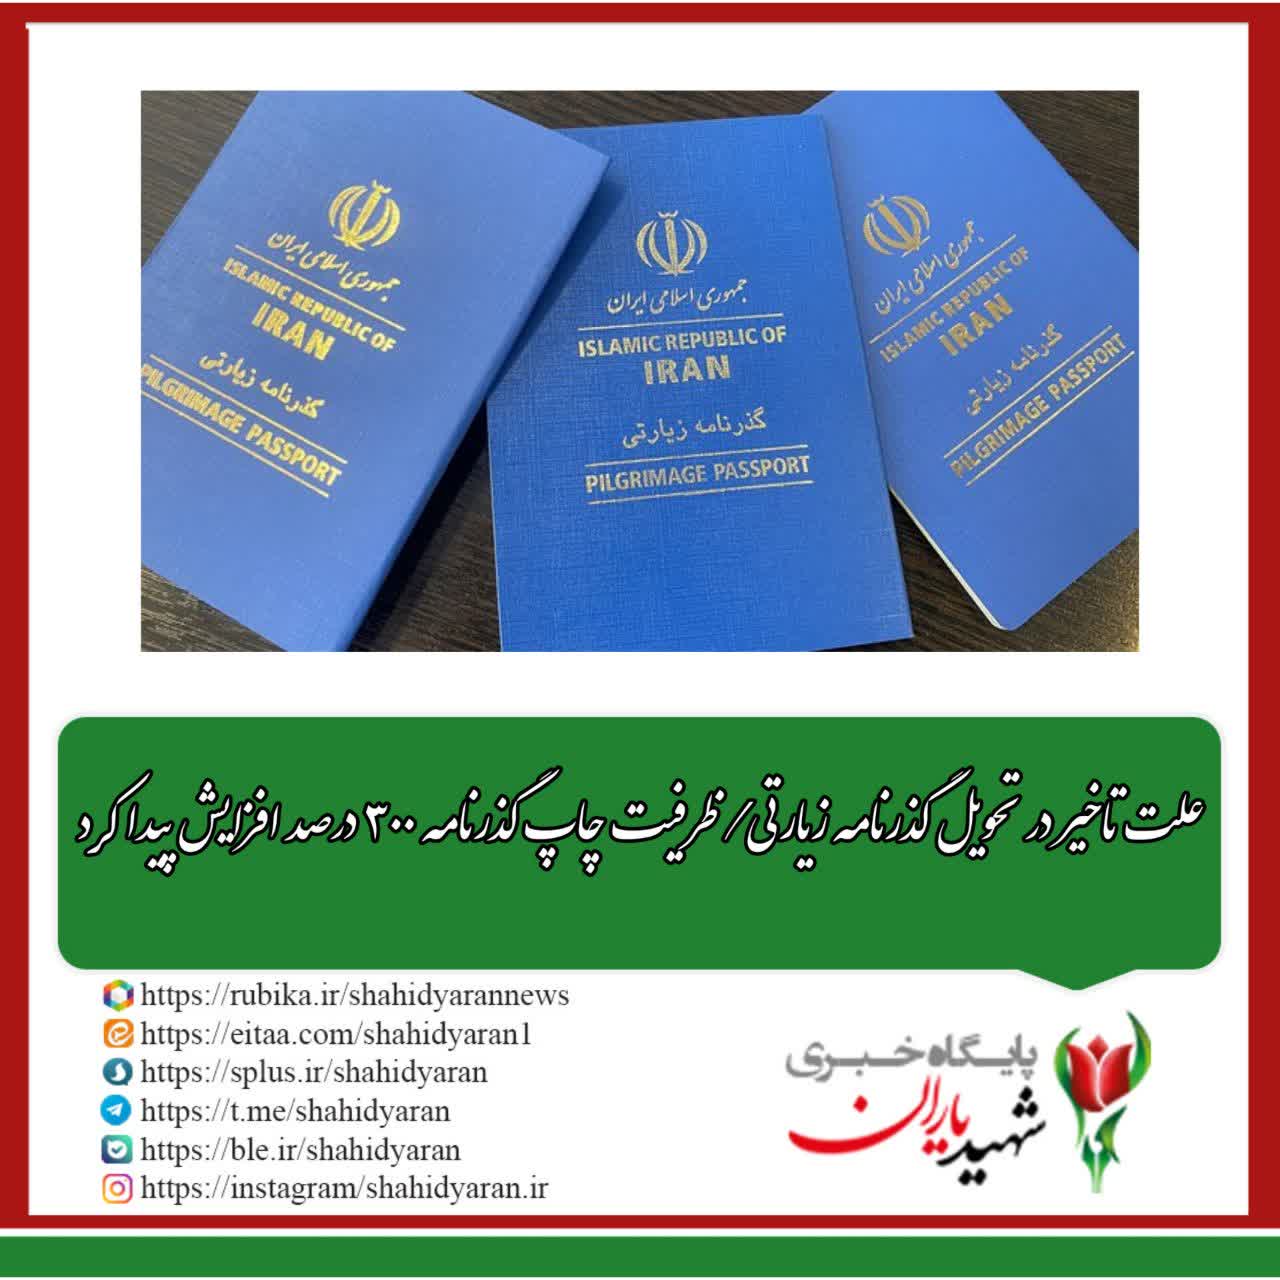 علت تاخیر در تحویل گذرنامه زیارتی/ ظرفیت چاپ گذرنامه ۳۰۰ درصد افزایش پیدا کرد